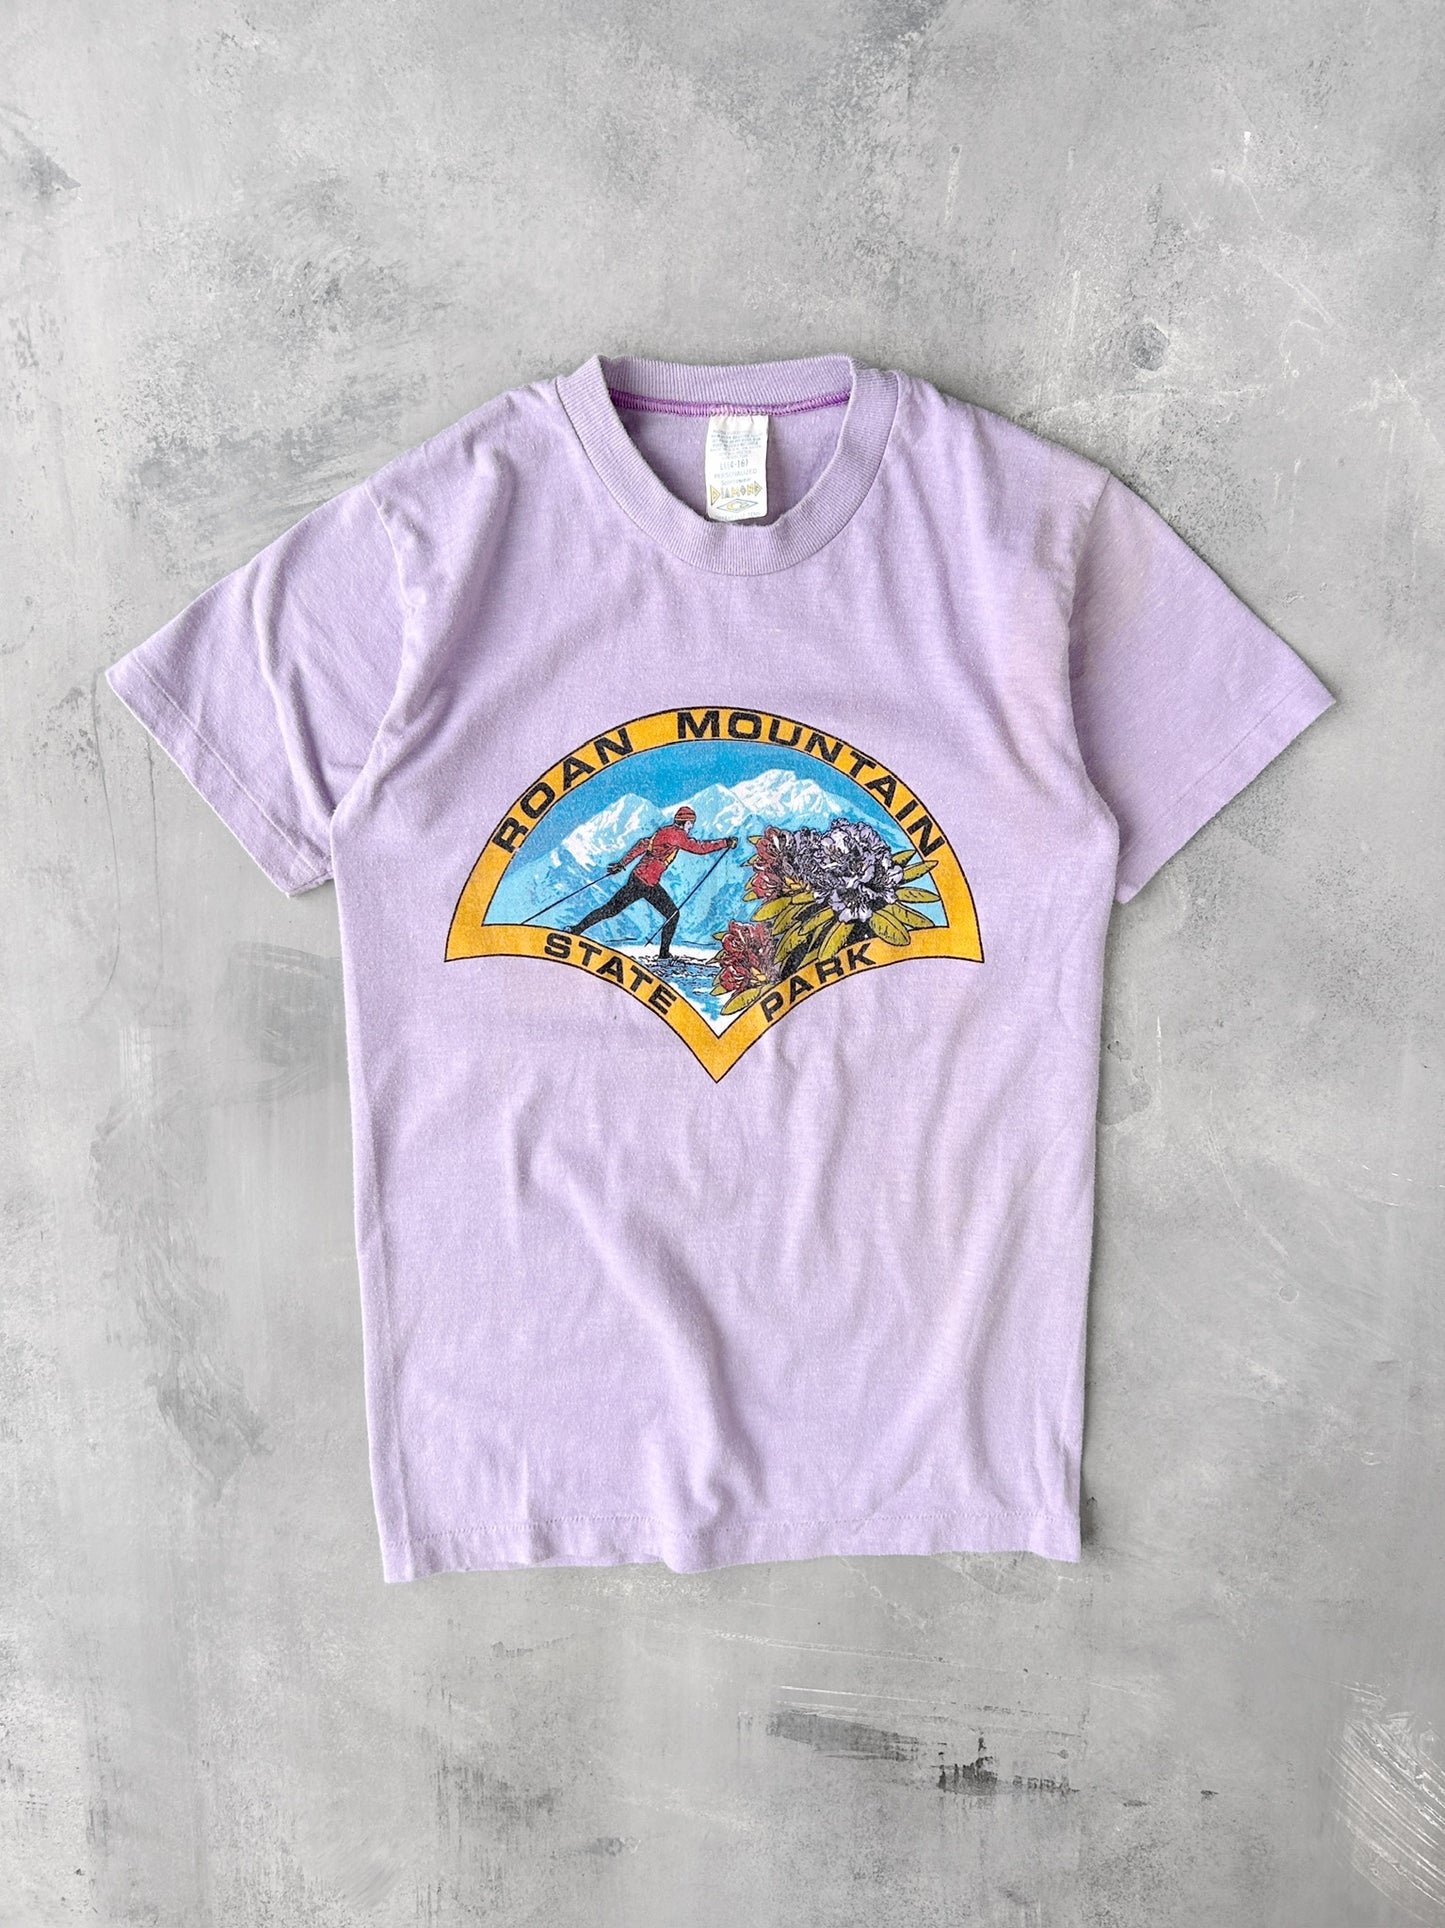 Roan Mountain T-Shirt 80's - XS